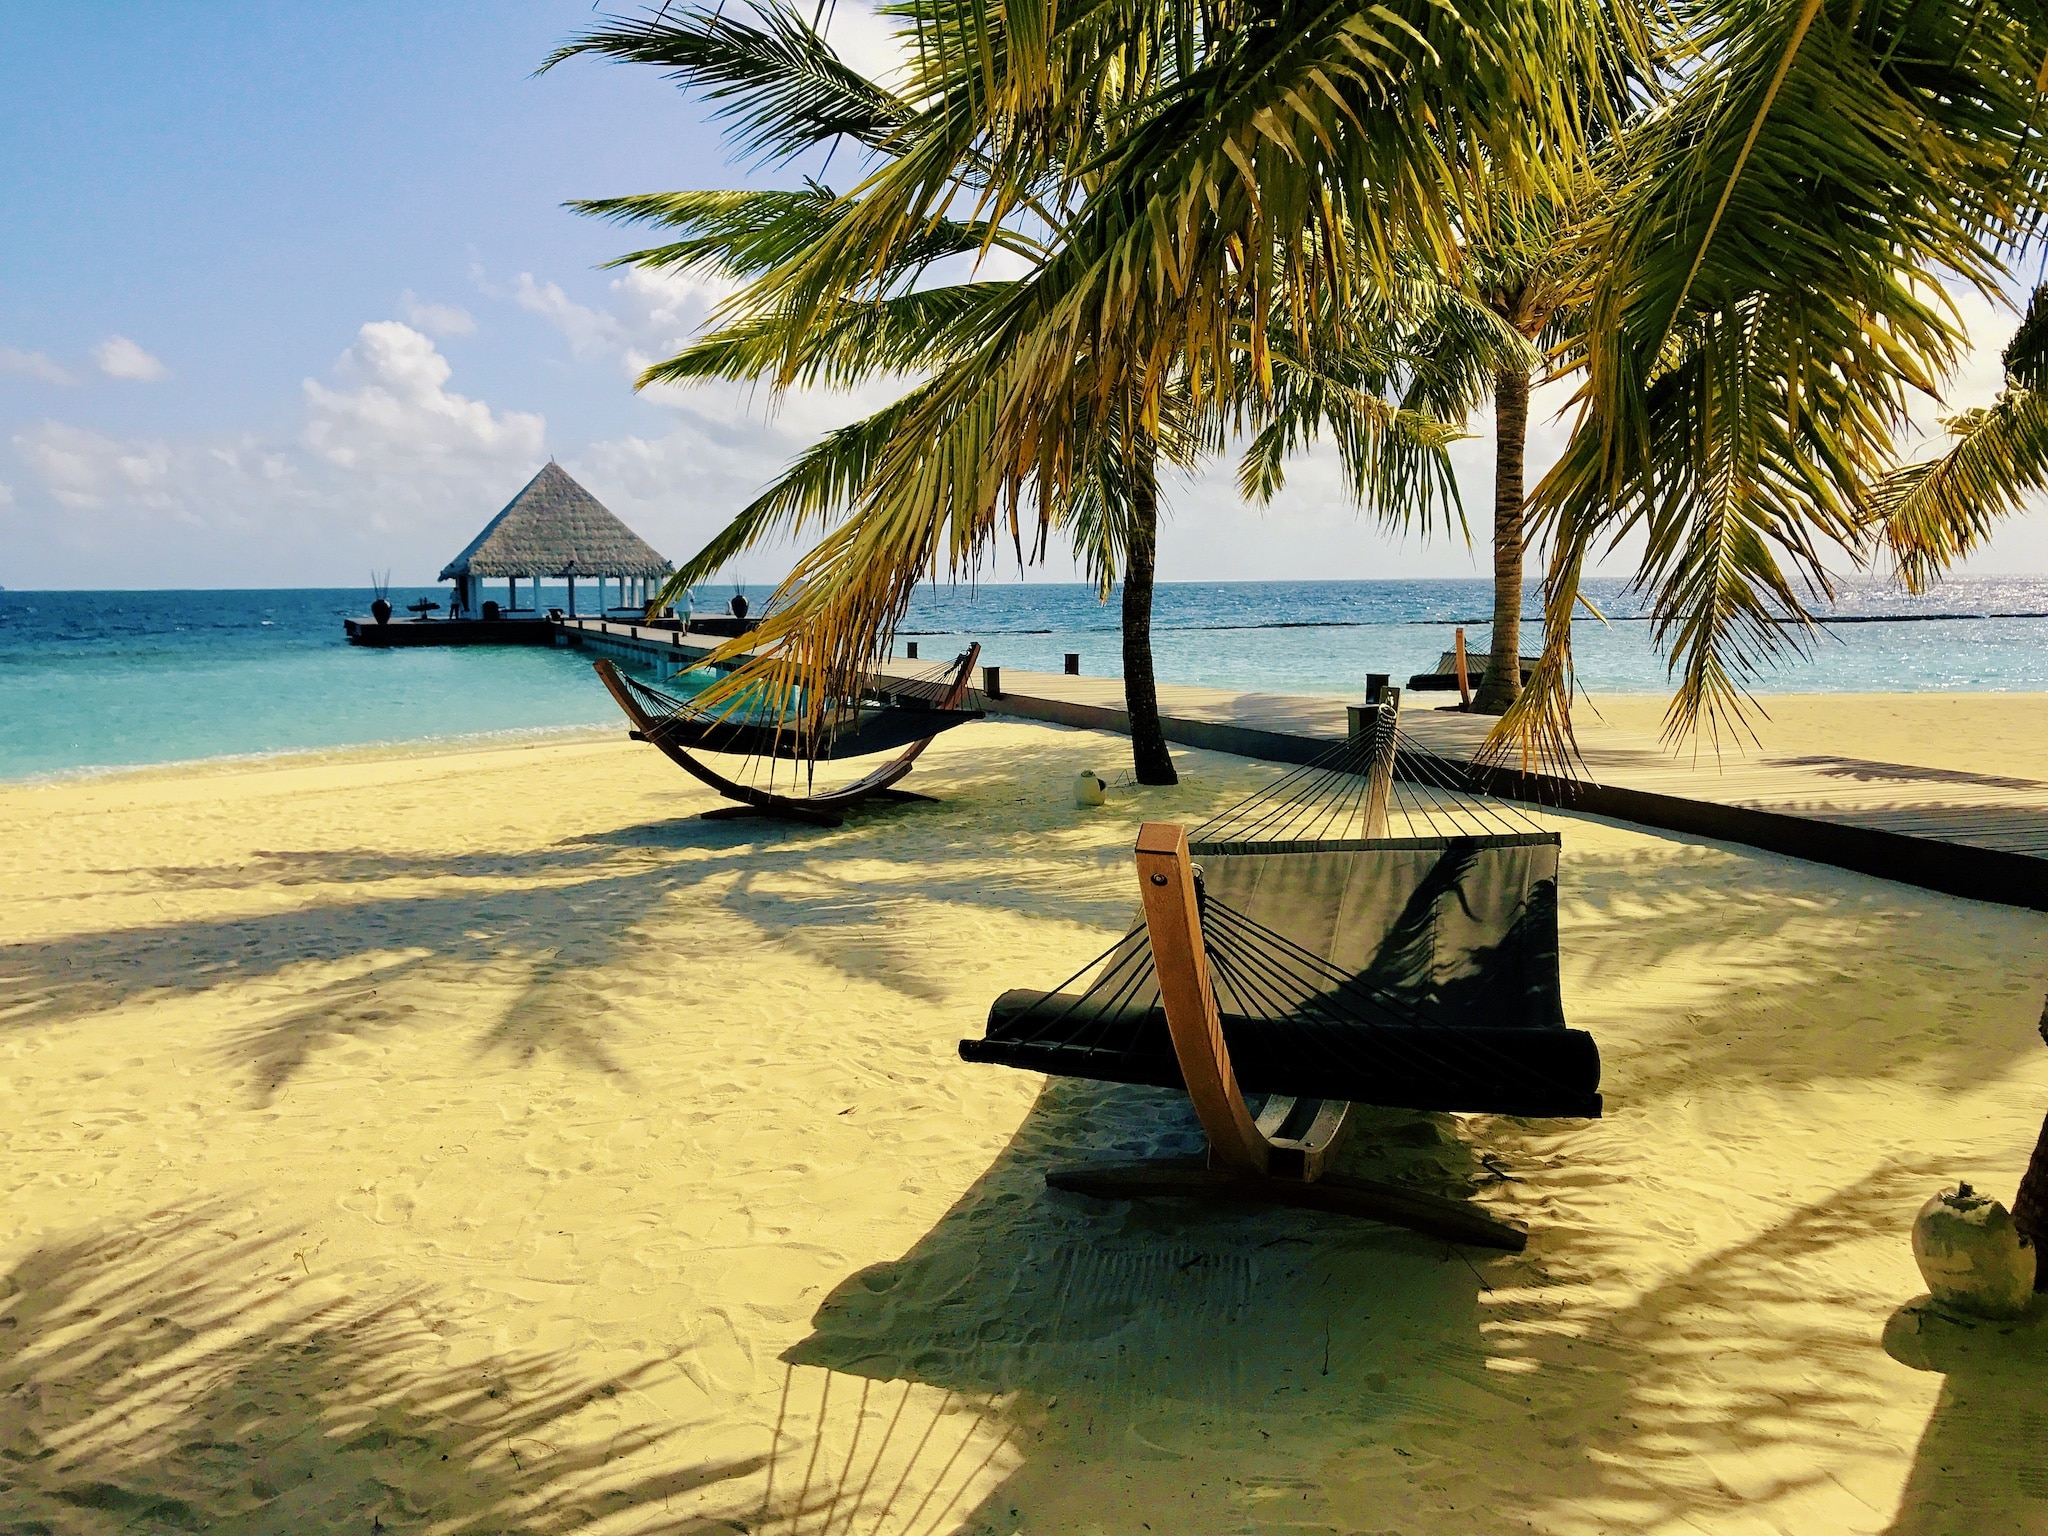 Book en billig ferie til Maldiverne – tips & oplevelser til paradisøen